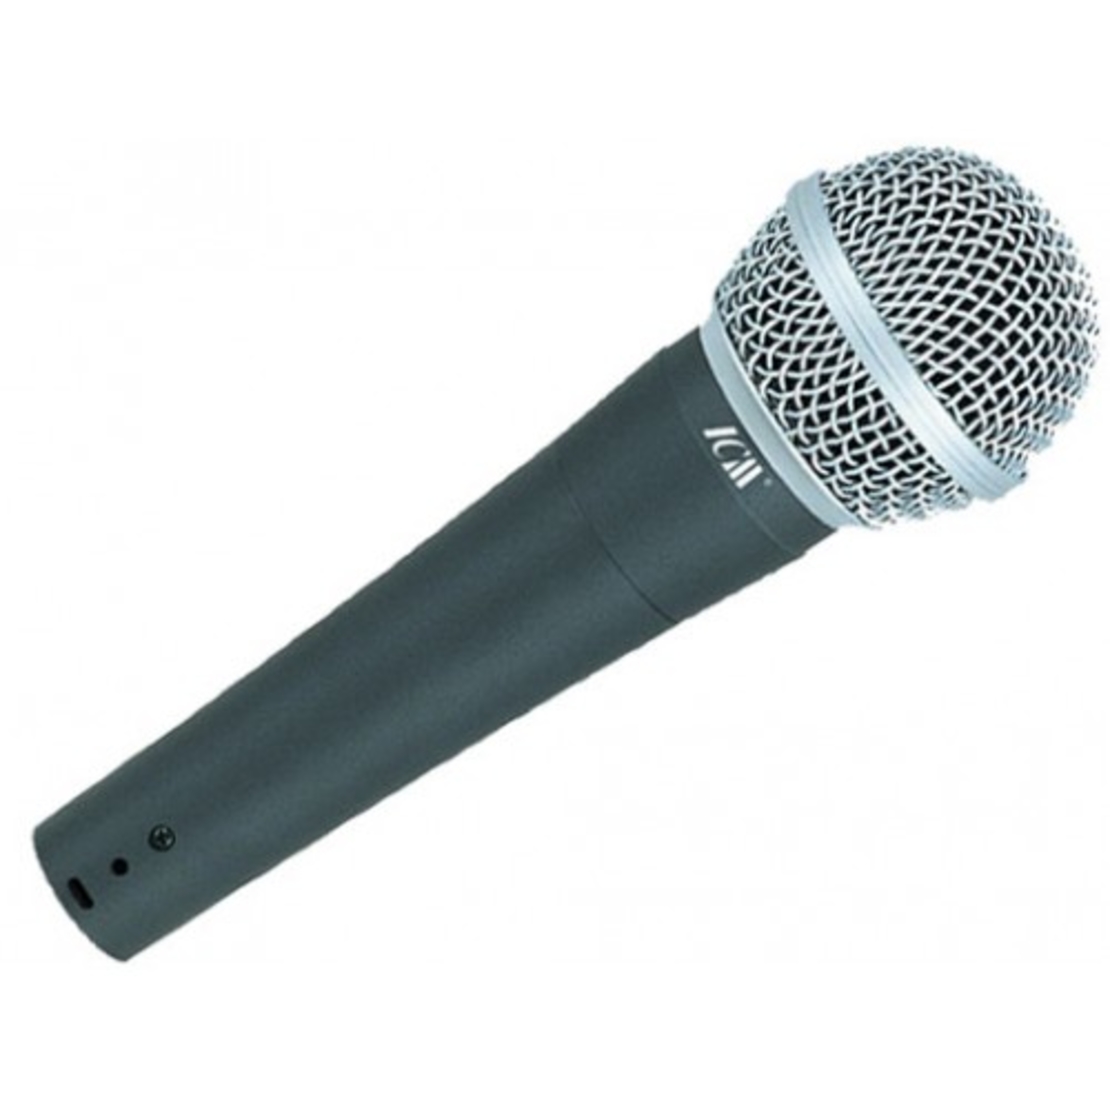 מיקרופון דינמי לשירה / דיבור כולל כבל מיקרופון 4 מטר